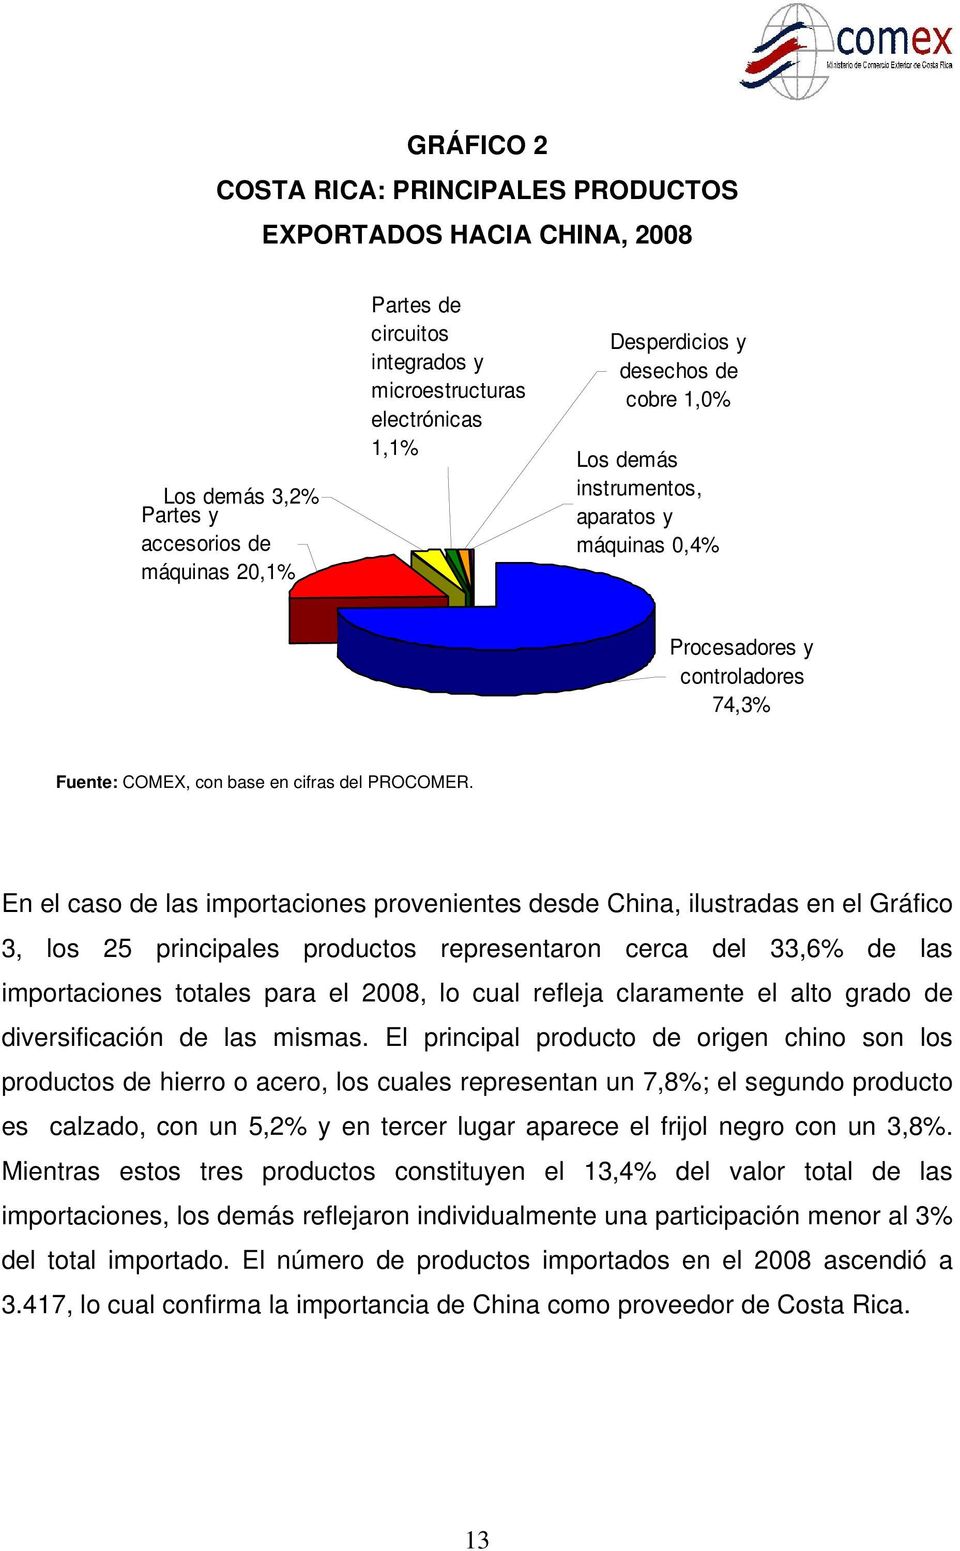 En el caso de las importaciones provenientes desde China, ilustradas en el Gráfico 3, los 25 principales productos representaron cerca del 33,6% de las importaciones totales para el 2008, lo cual